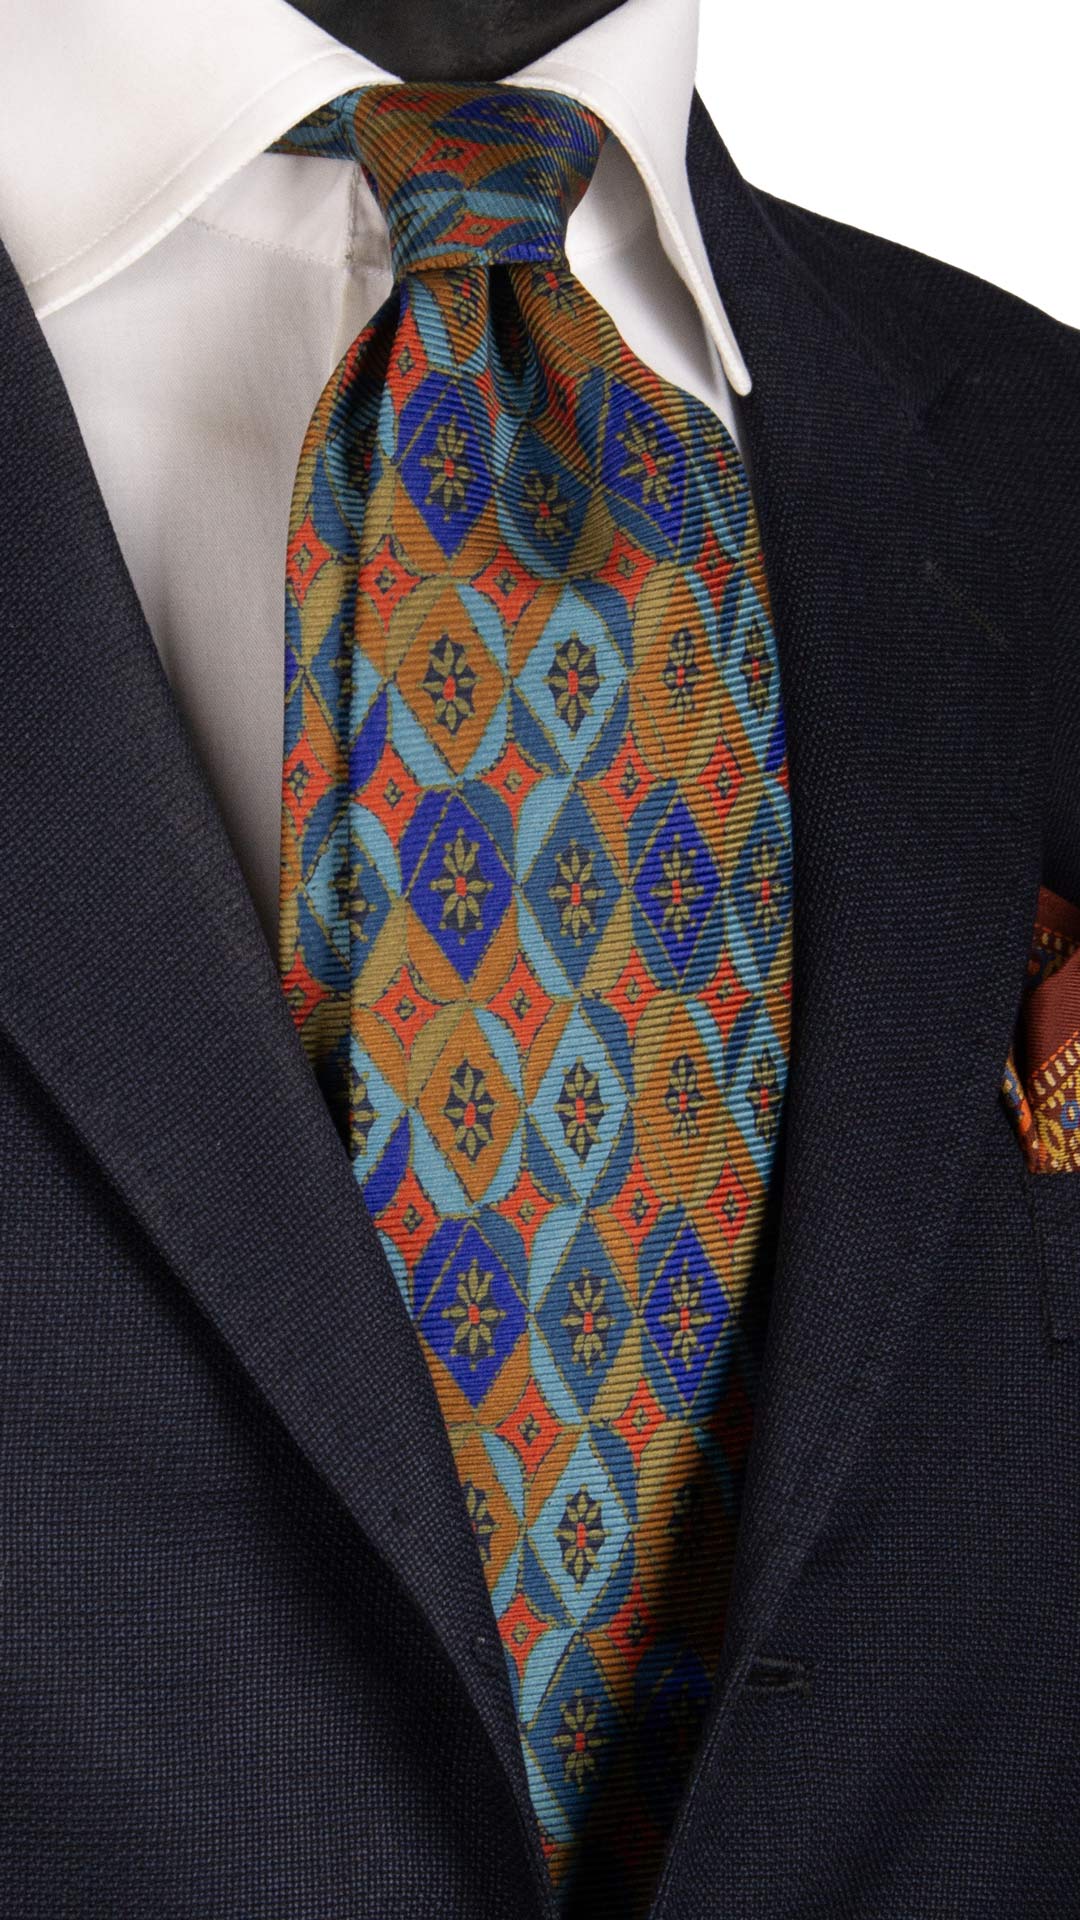 Cravatta Vintage in Saia di Seta Celeste Fantasia Blu Arancione Color Corda CV813 Made in Italy Graffeo cravatte